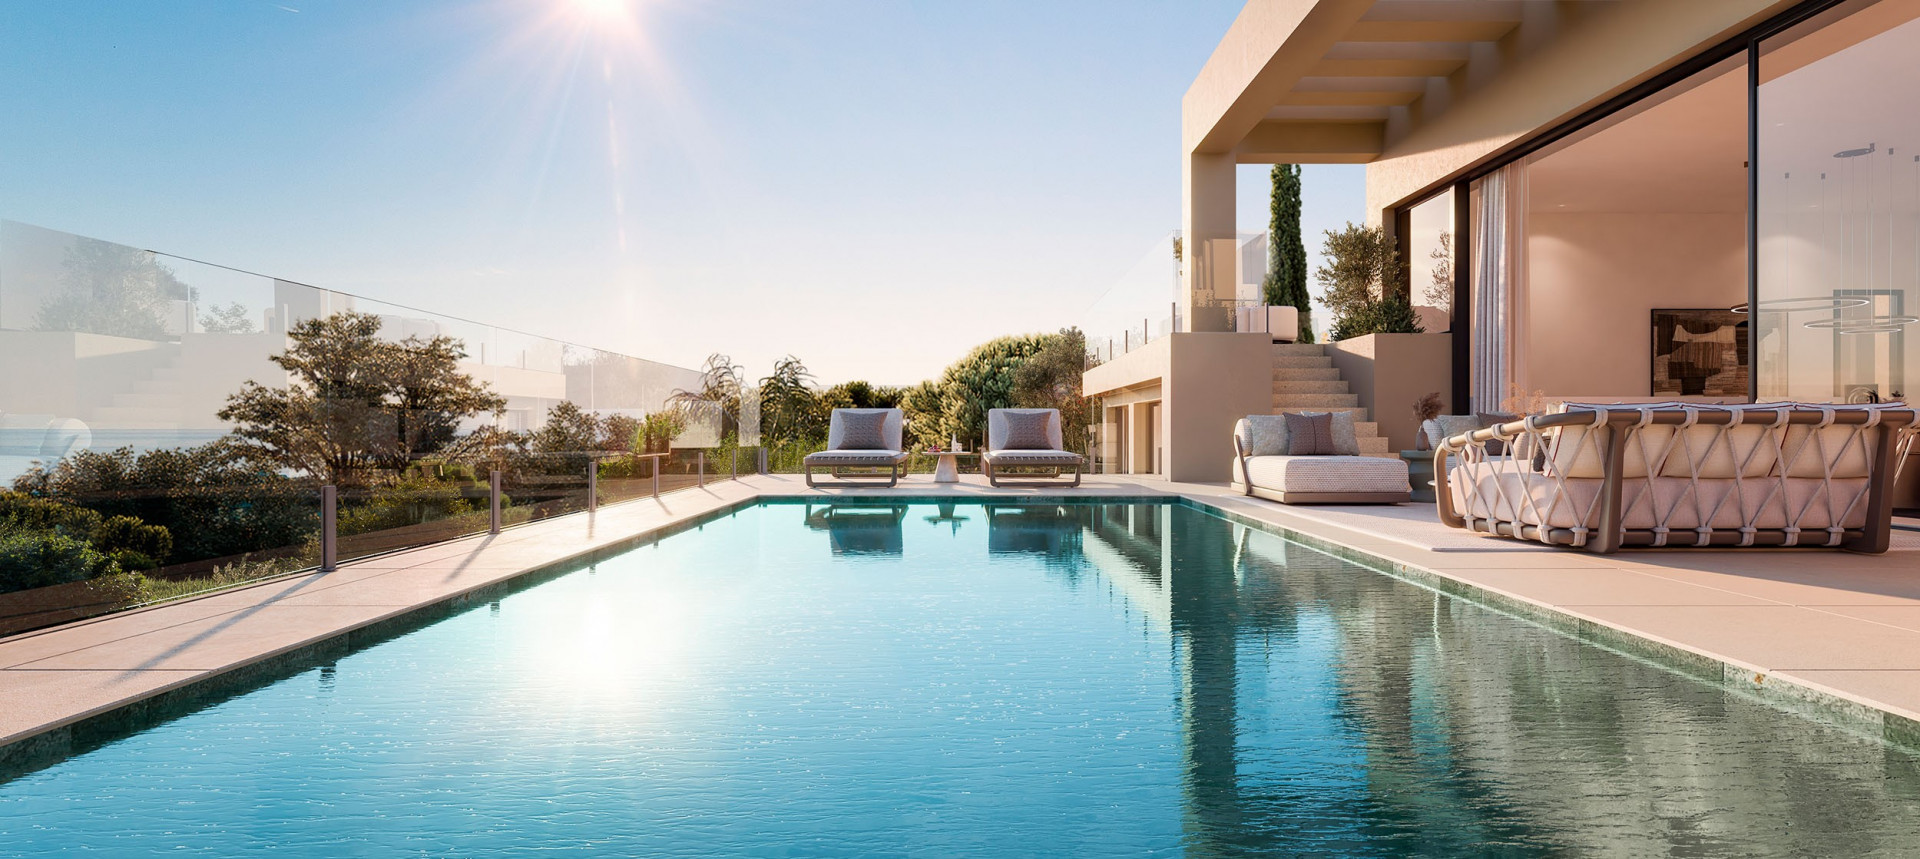 Complejo de nueva construcción de villas contemporáneas de lujo con piscina privada e increíbles vistas panorámicas al mar en La Alqueria